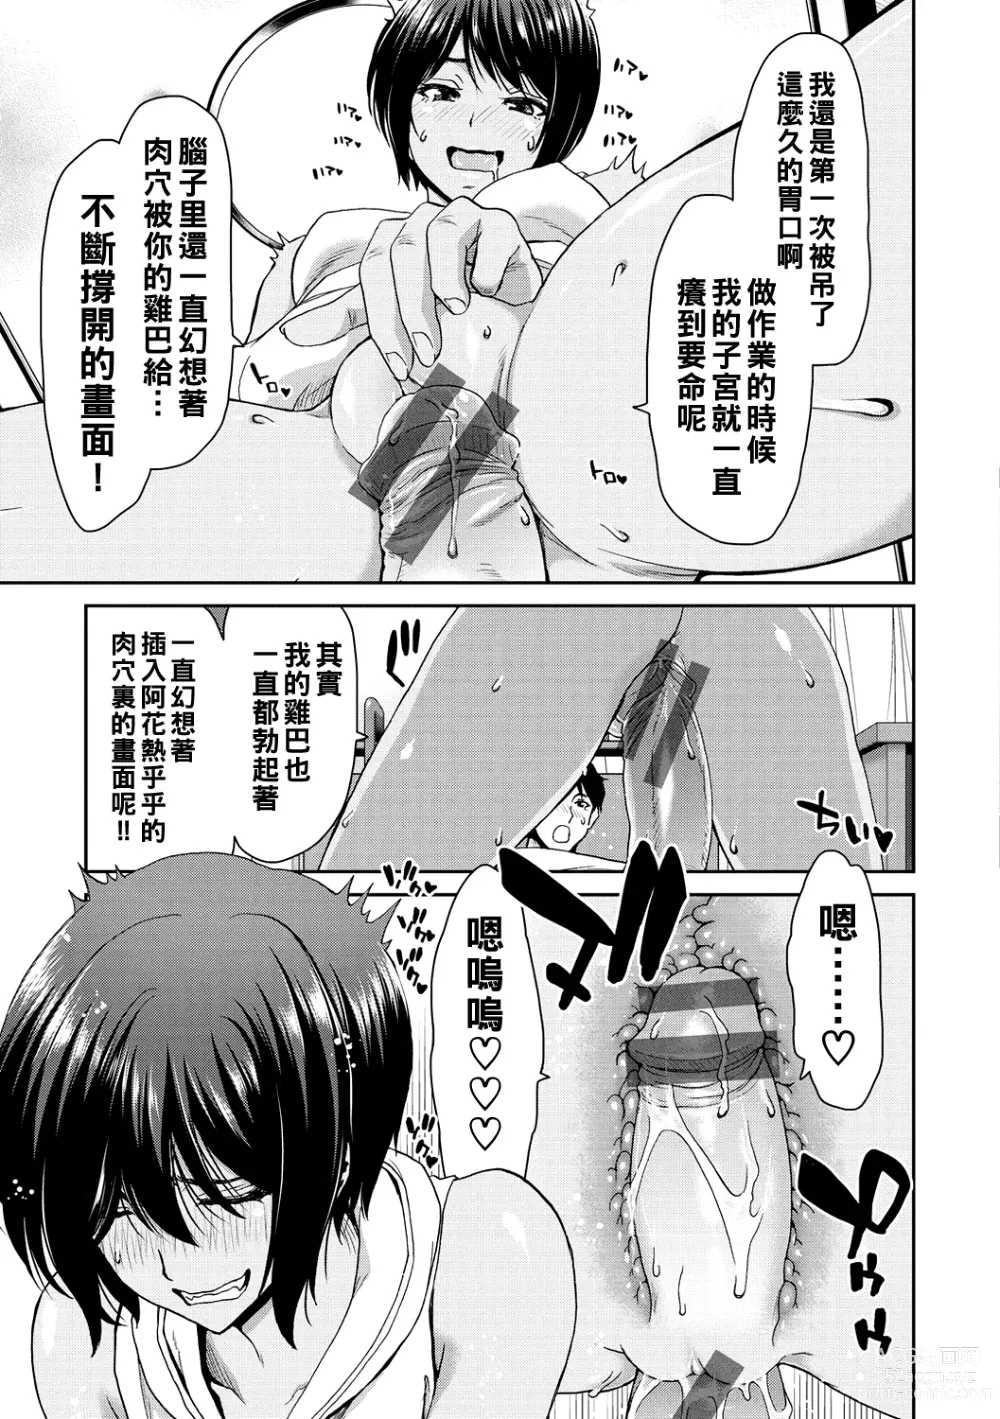 Page 139 of manga Shiyokka Hametsu SEX